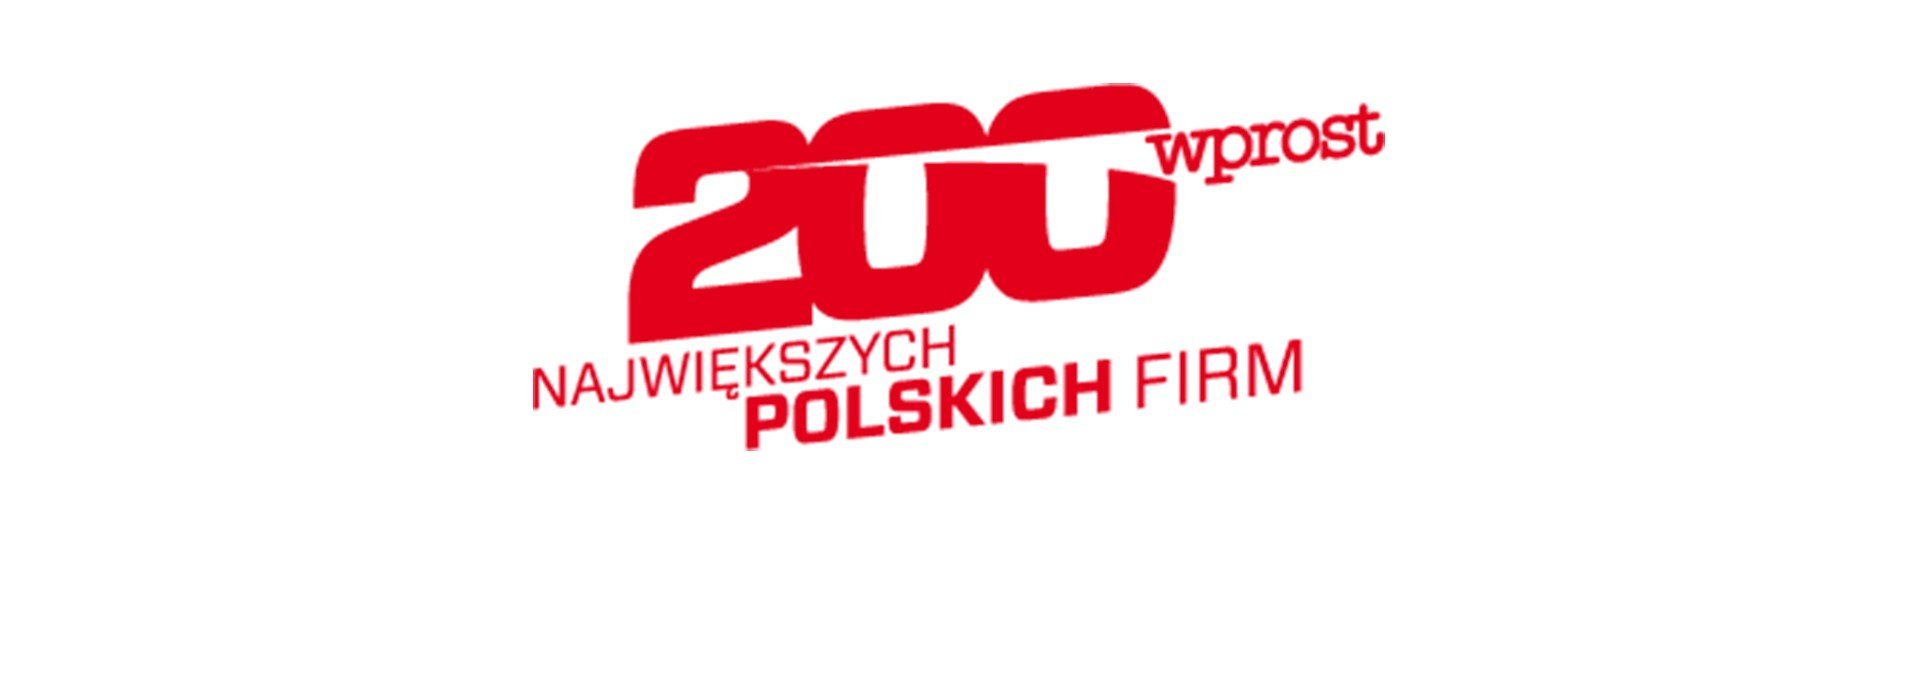 Drutex awansuje na liście 200 największych polskich firm „Wprost”